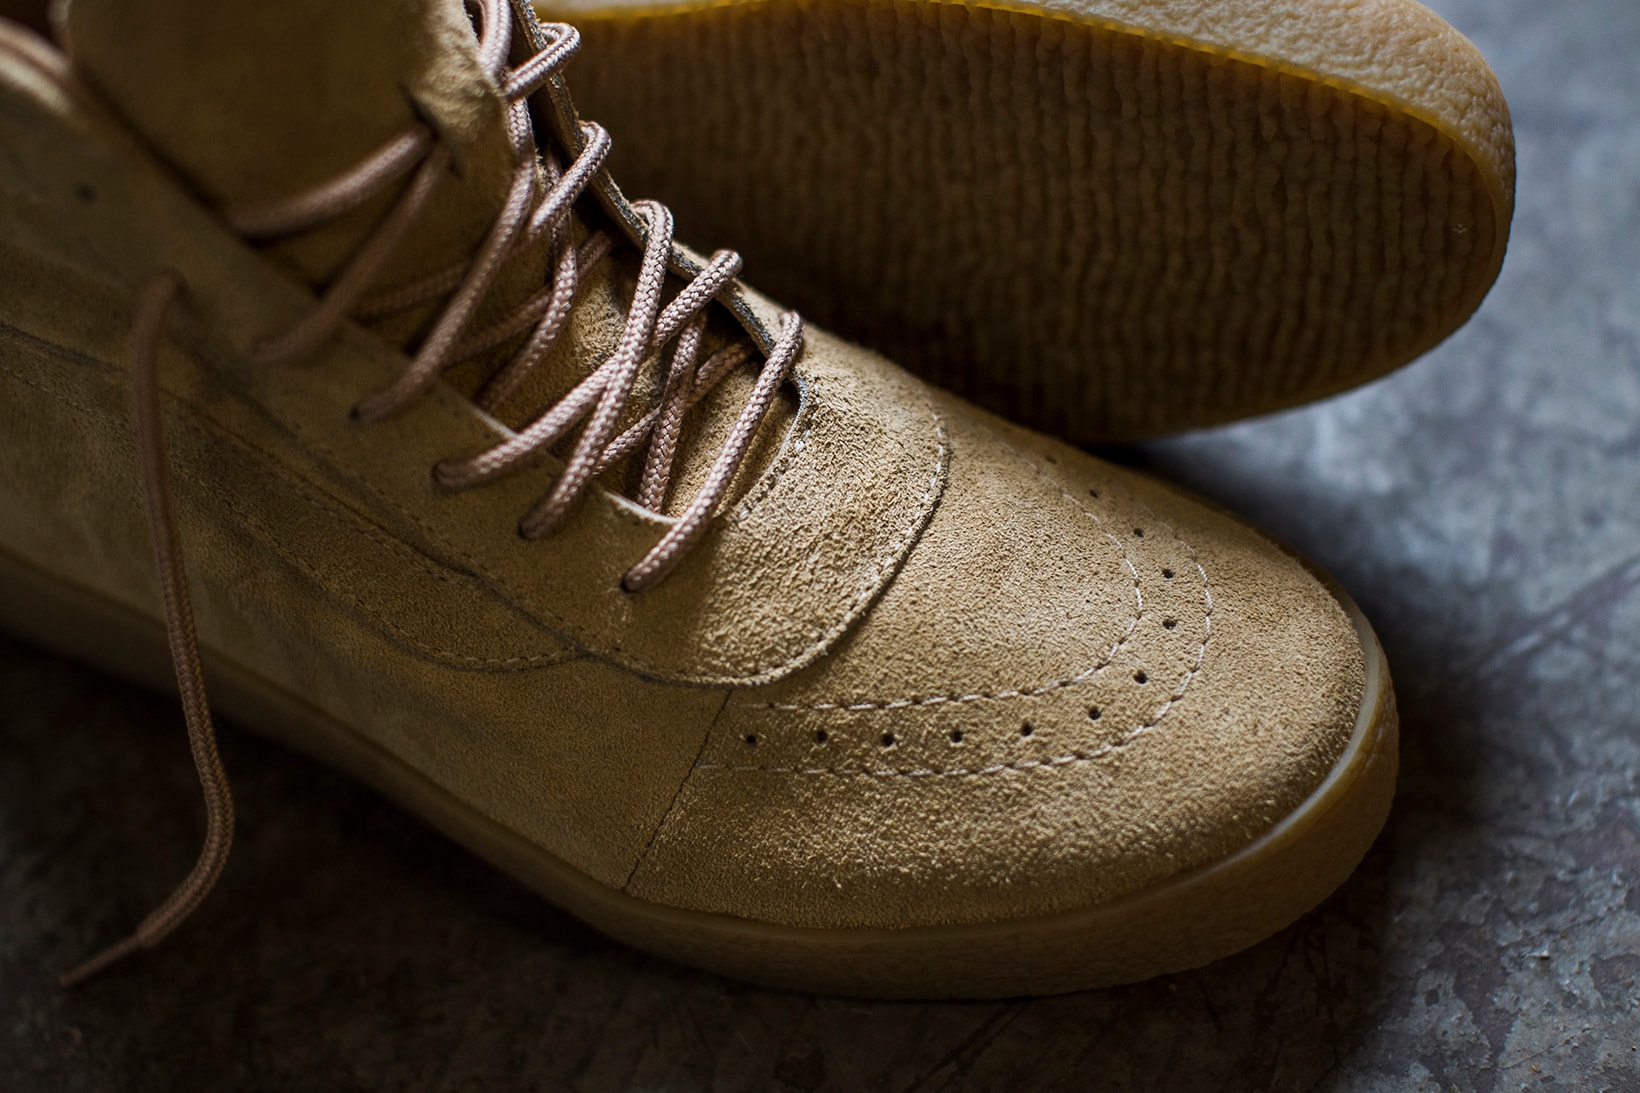 Shoe Surgeon Yeezy Crepe Boot Vans Sneaker ComplexCon